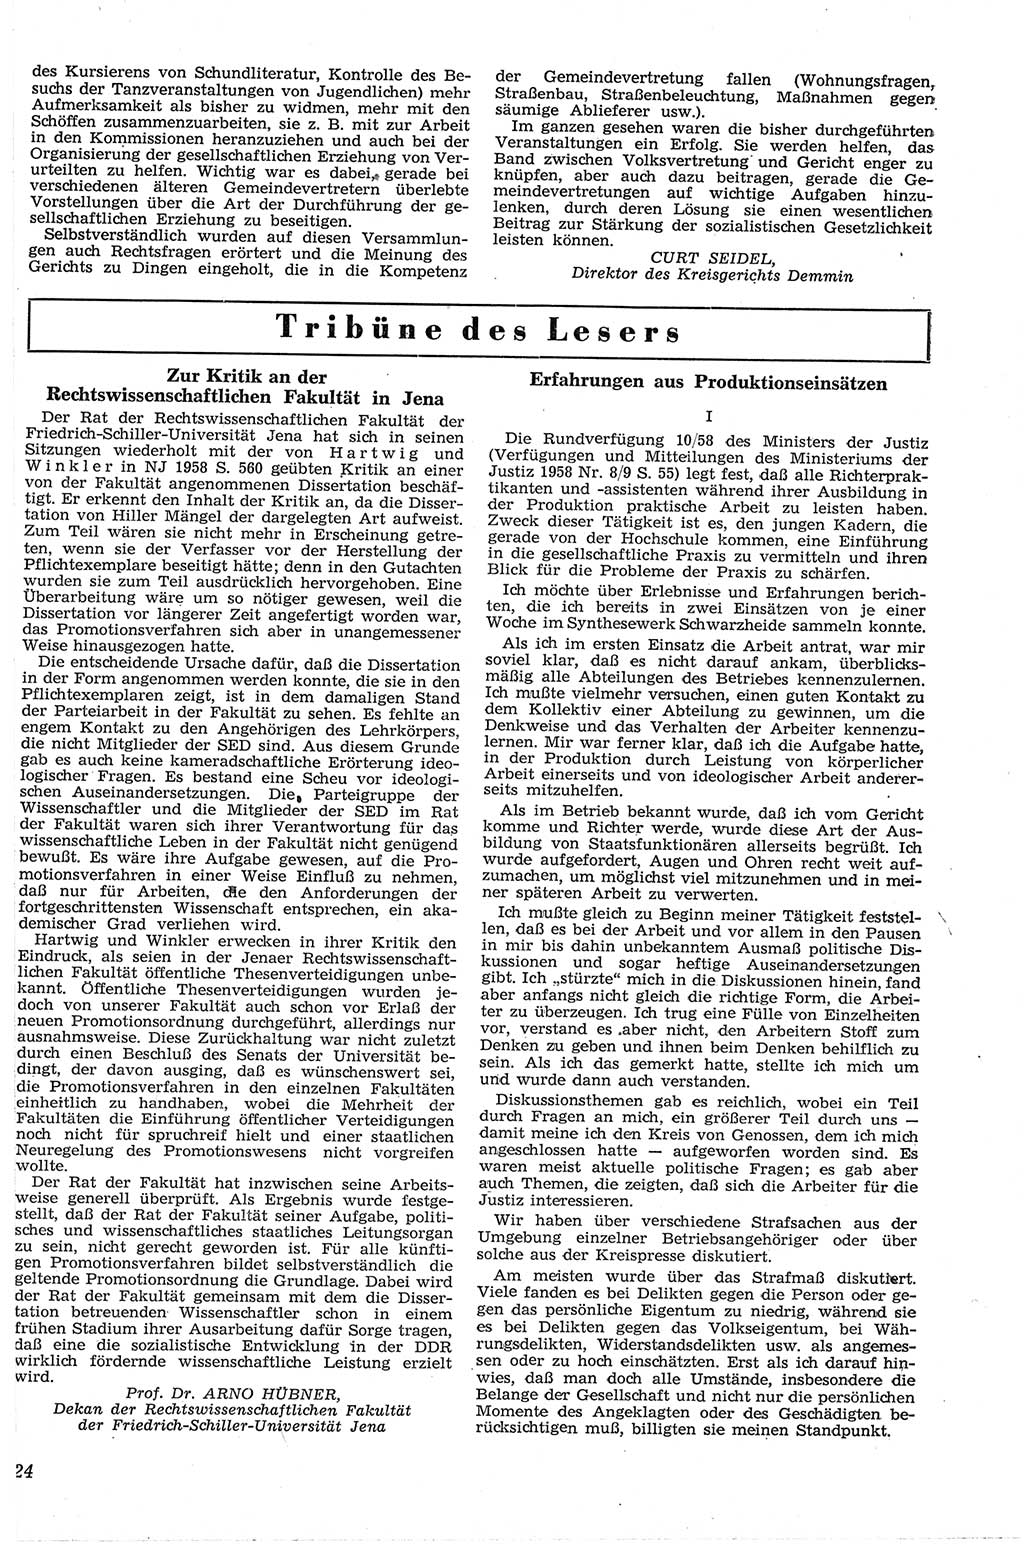 Neue Justiz (NJ), Zeitschrift für Recht und Rechtswissenschaft [Deutsche Demokratische Republik (DDR)], 13. Jahrgang 1959, Seite 24 (NJ DDR 1959, S. 24)